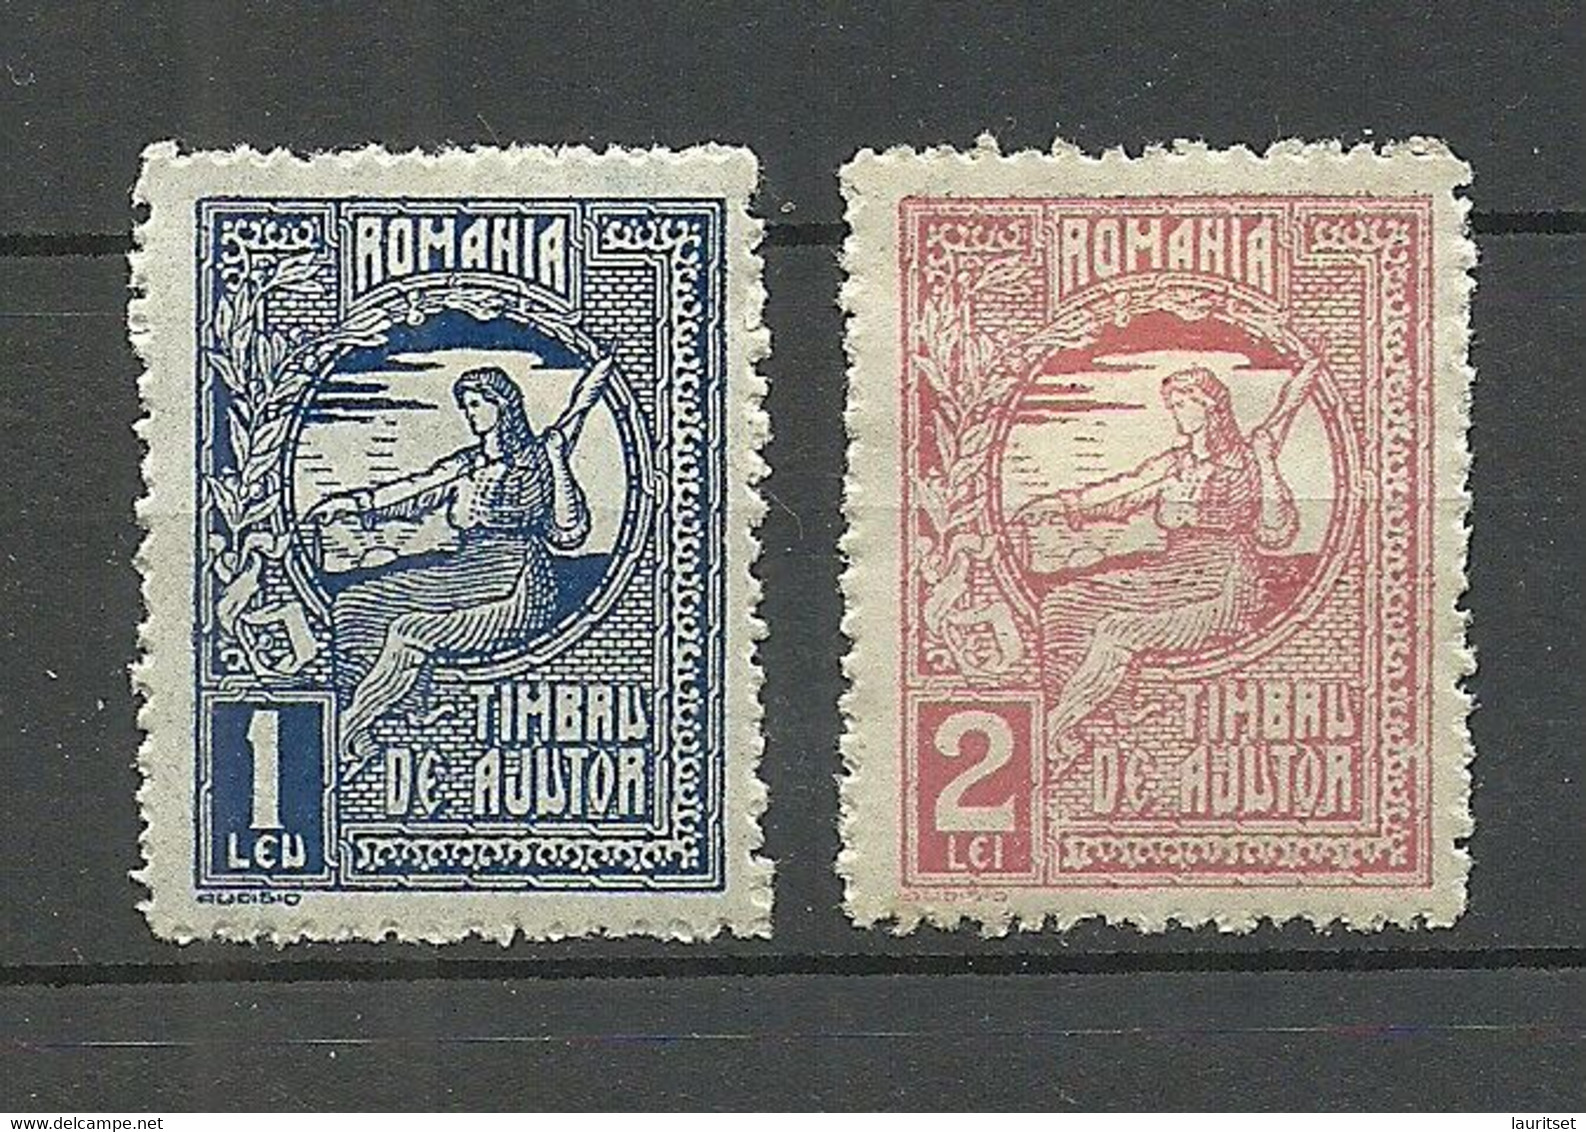 ROMANIA Rumänien Timbru De Ajutor 1 & 2 Leu * - Revenue Stamps